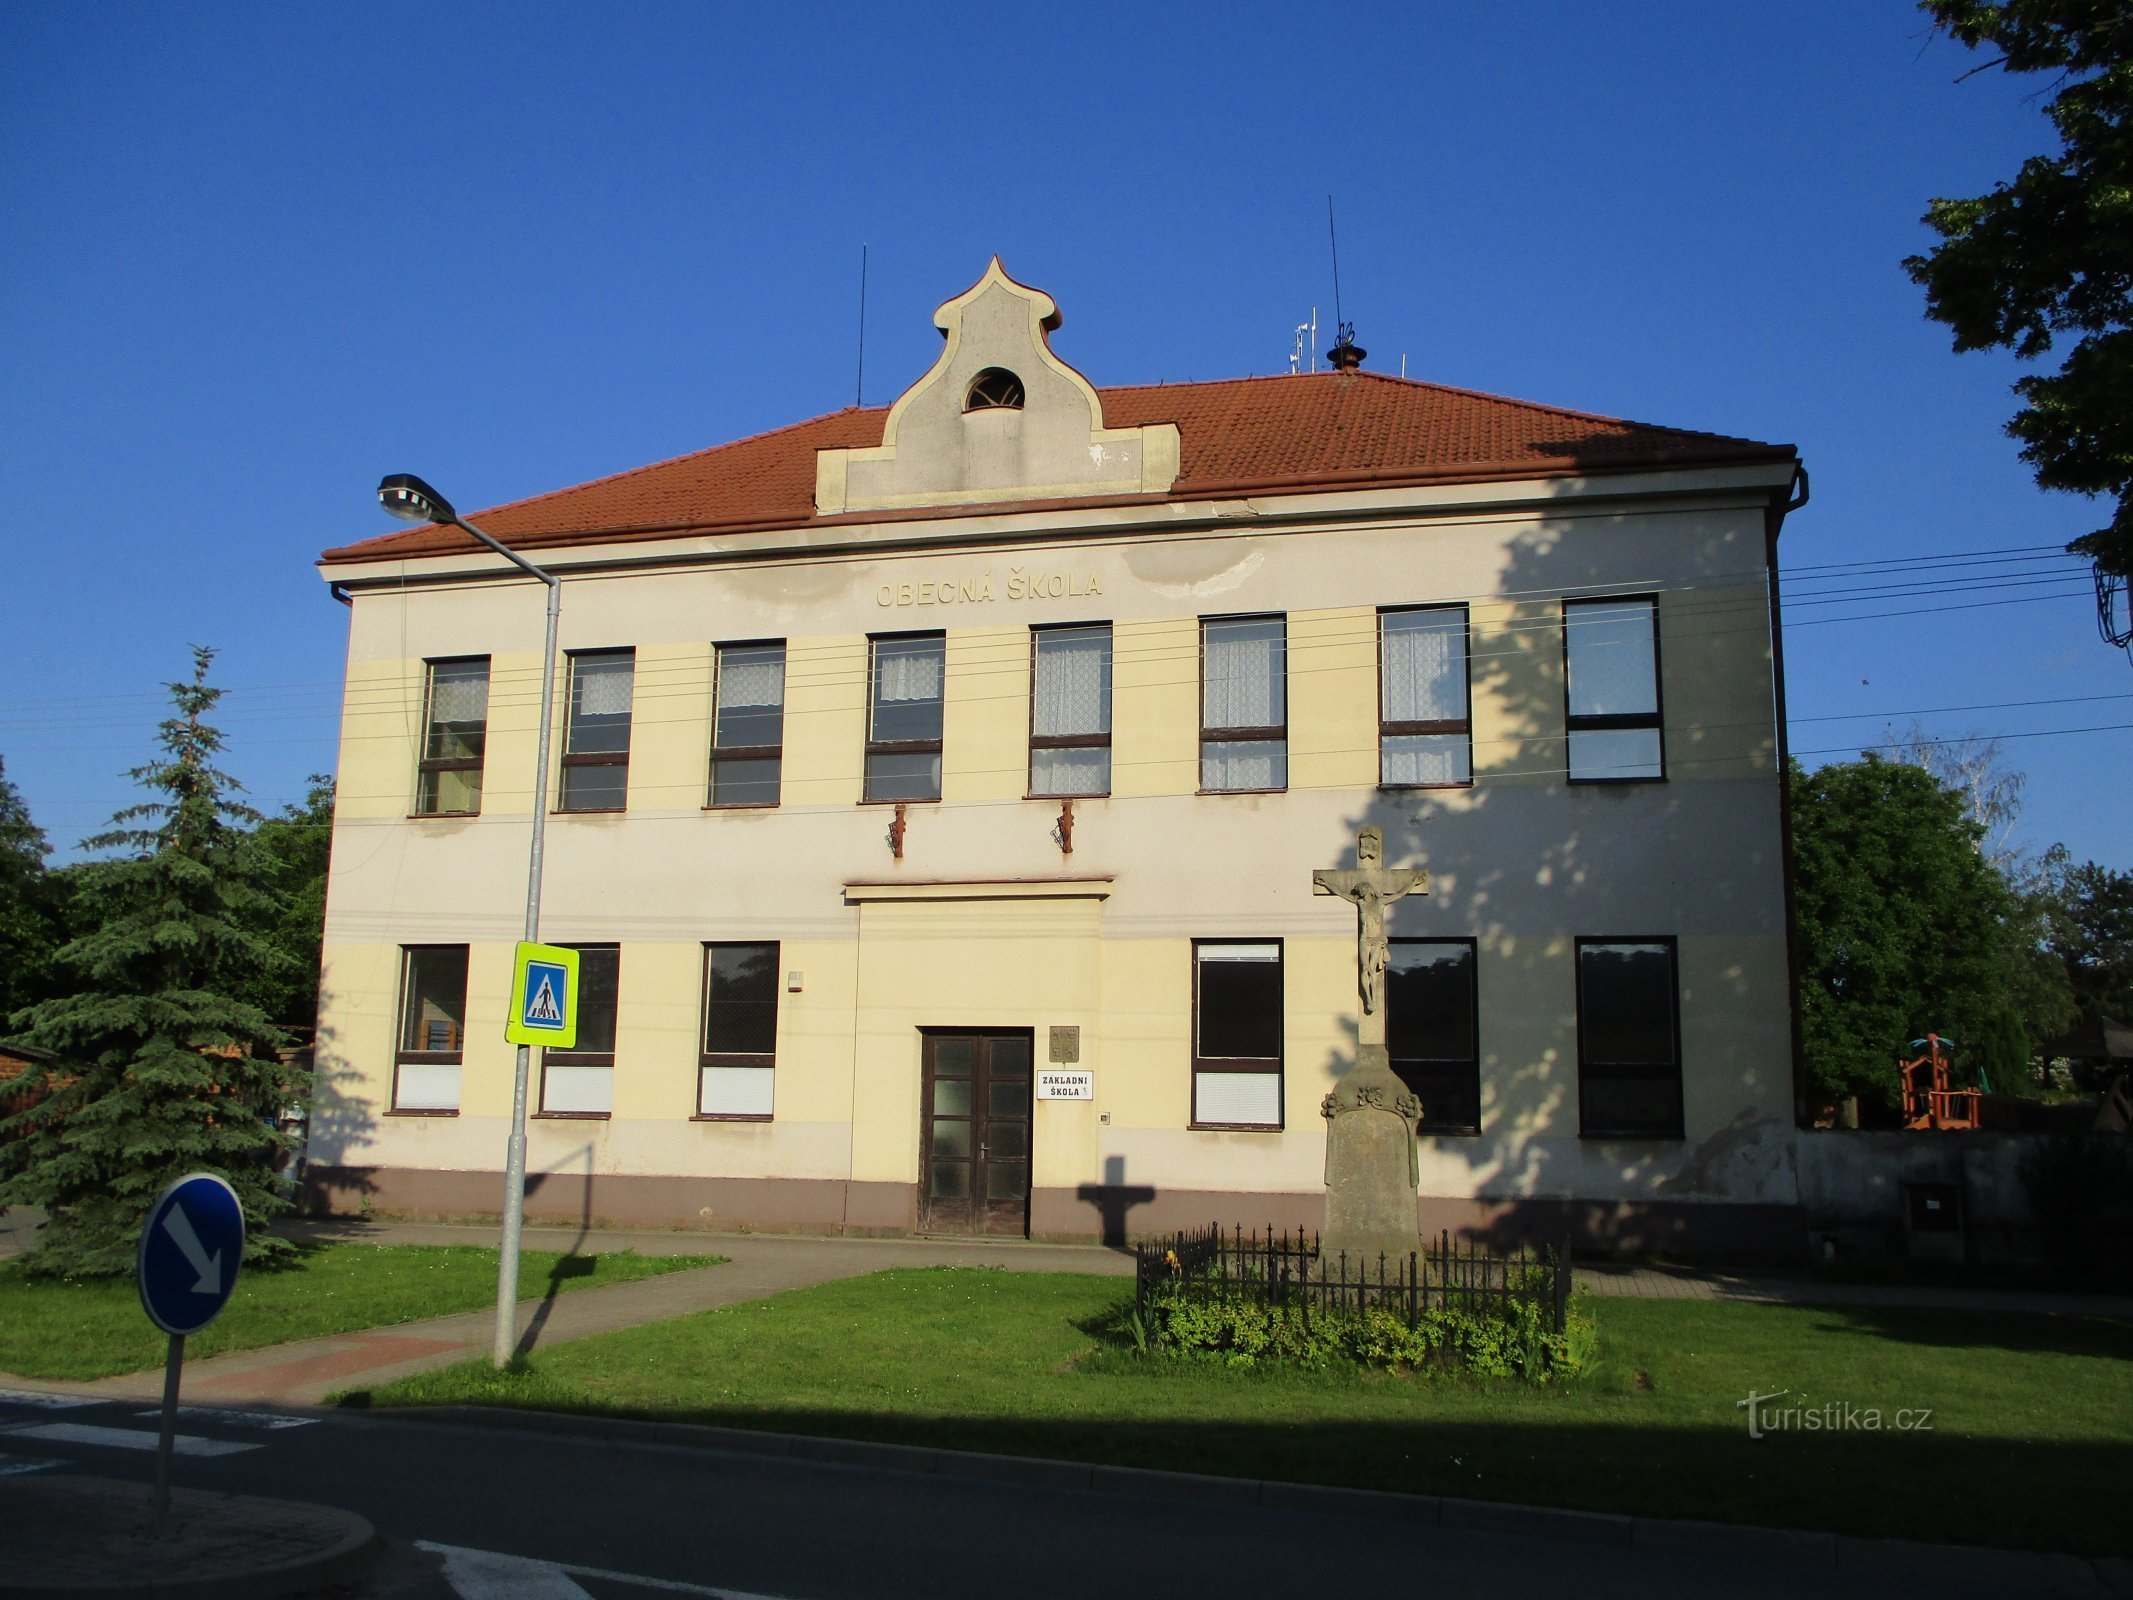 Scuola (Dobřenice, 7.6.2019 giugno XNUMX)